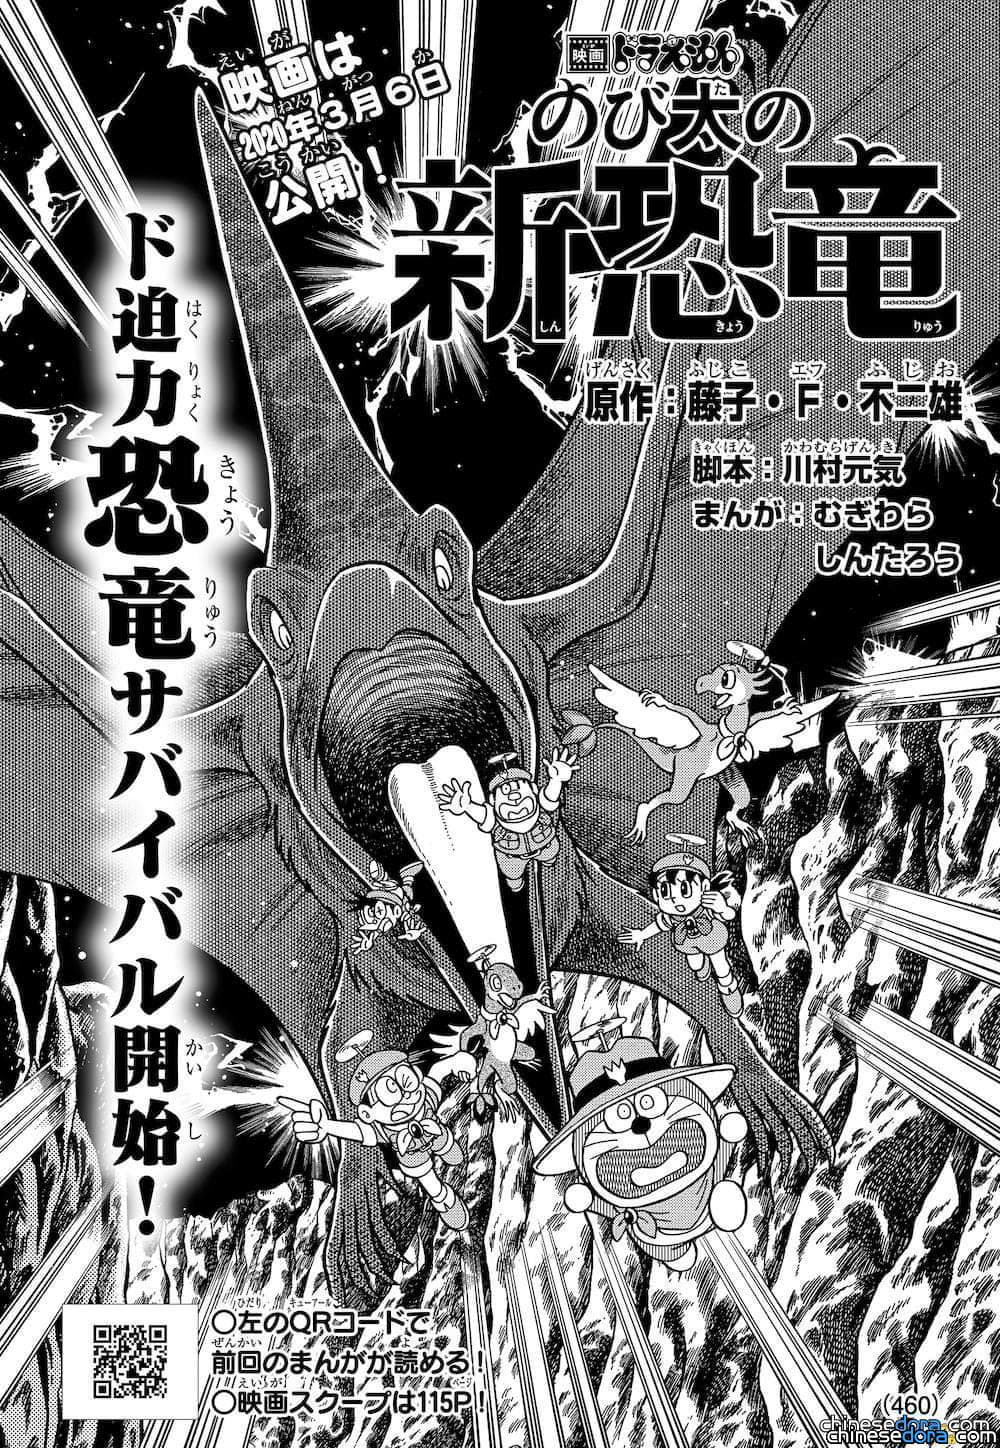 [日本] 《大雄的新恐龍》漫畫第4回免費公開中！1/15-2/14特別開放全球鑑賞